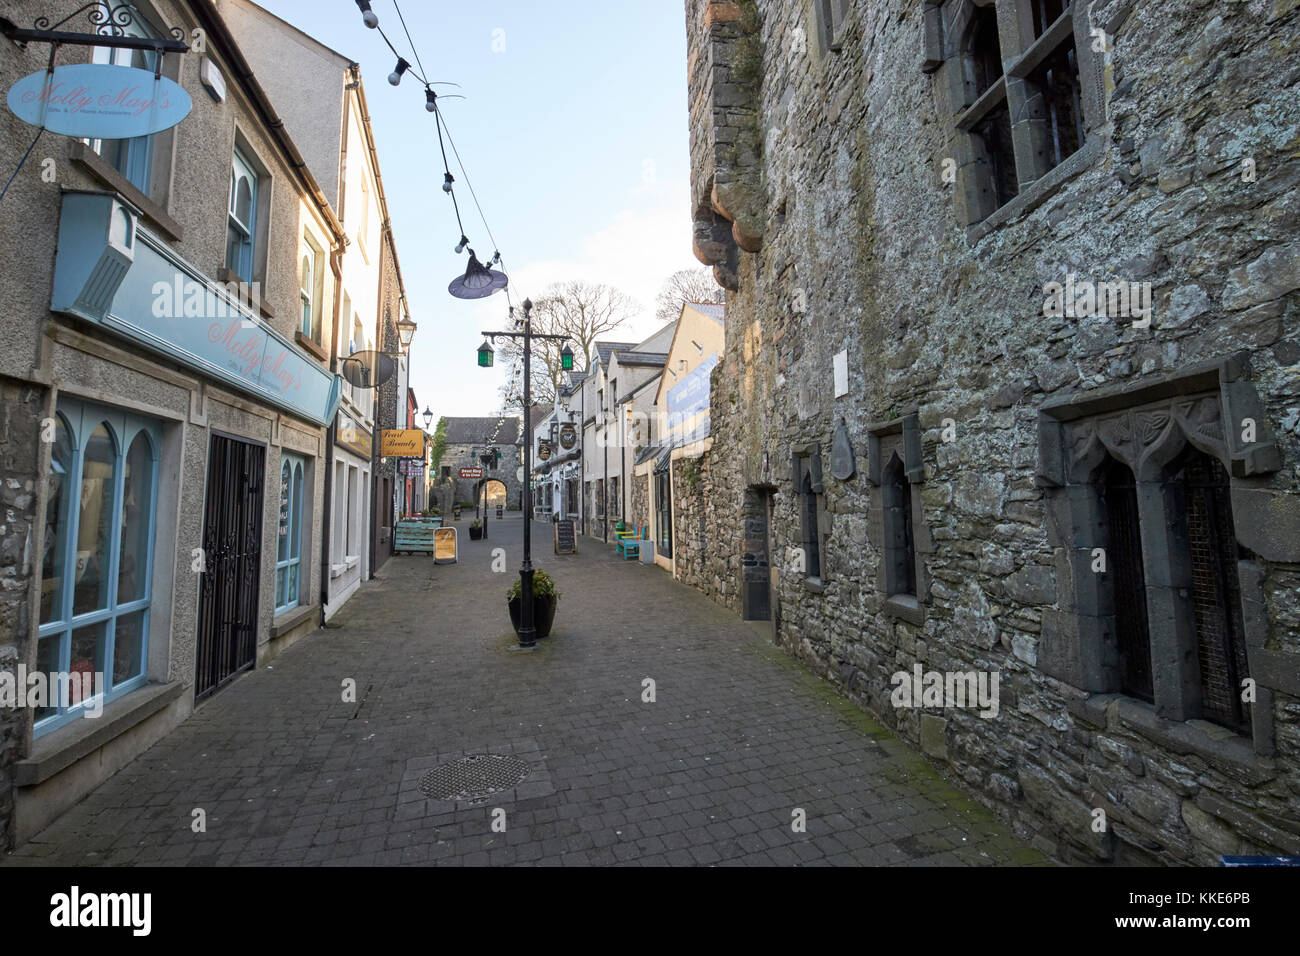 Stretto tholsel storico street presso la zecca che conduce al gate tholsel layout medievale carlingford County Louth Repubblica di Irlanda Foto Stock